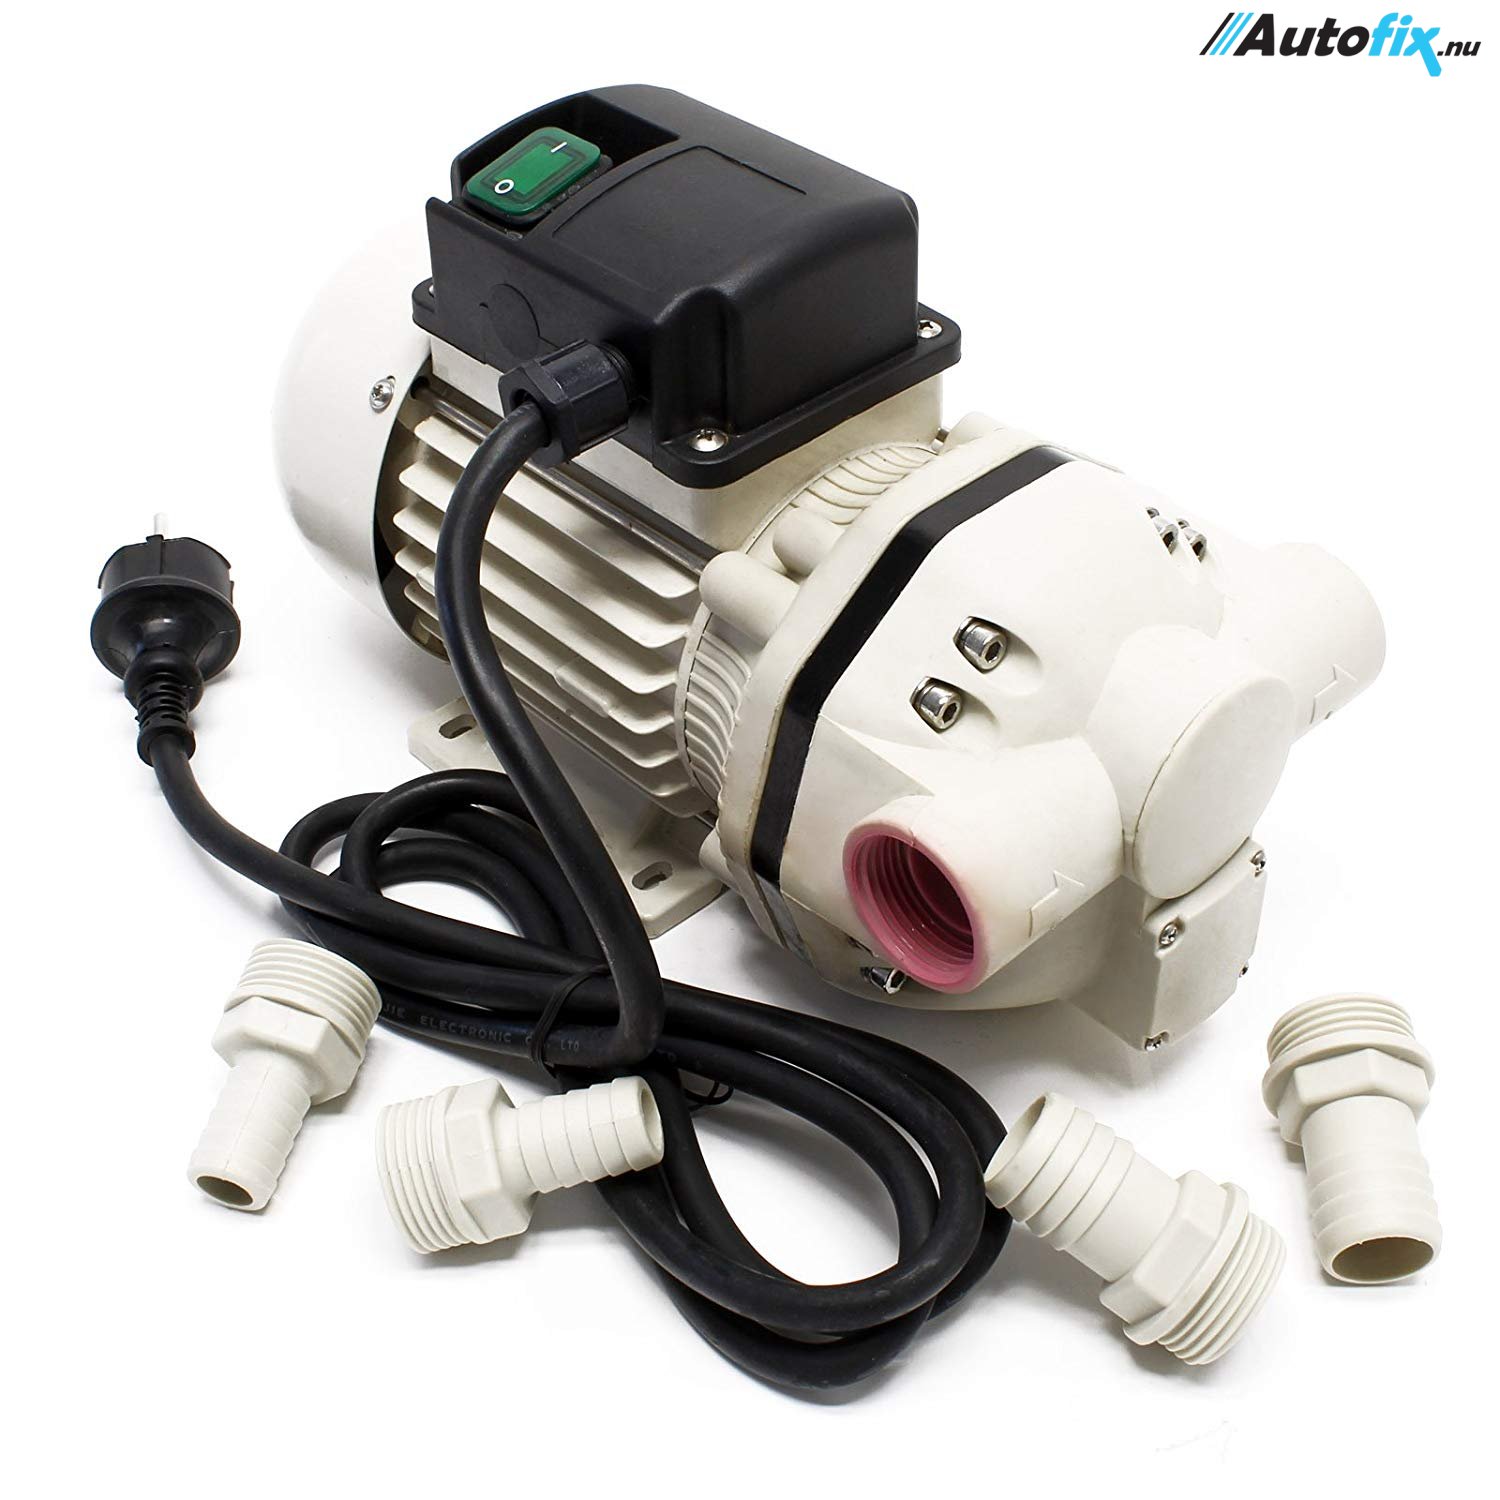 AdBlue Pumpe Selvansugende 230V - 400W / 40 L/min. - Adblue pumpe -   ApS